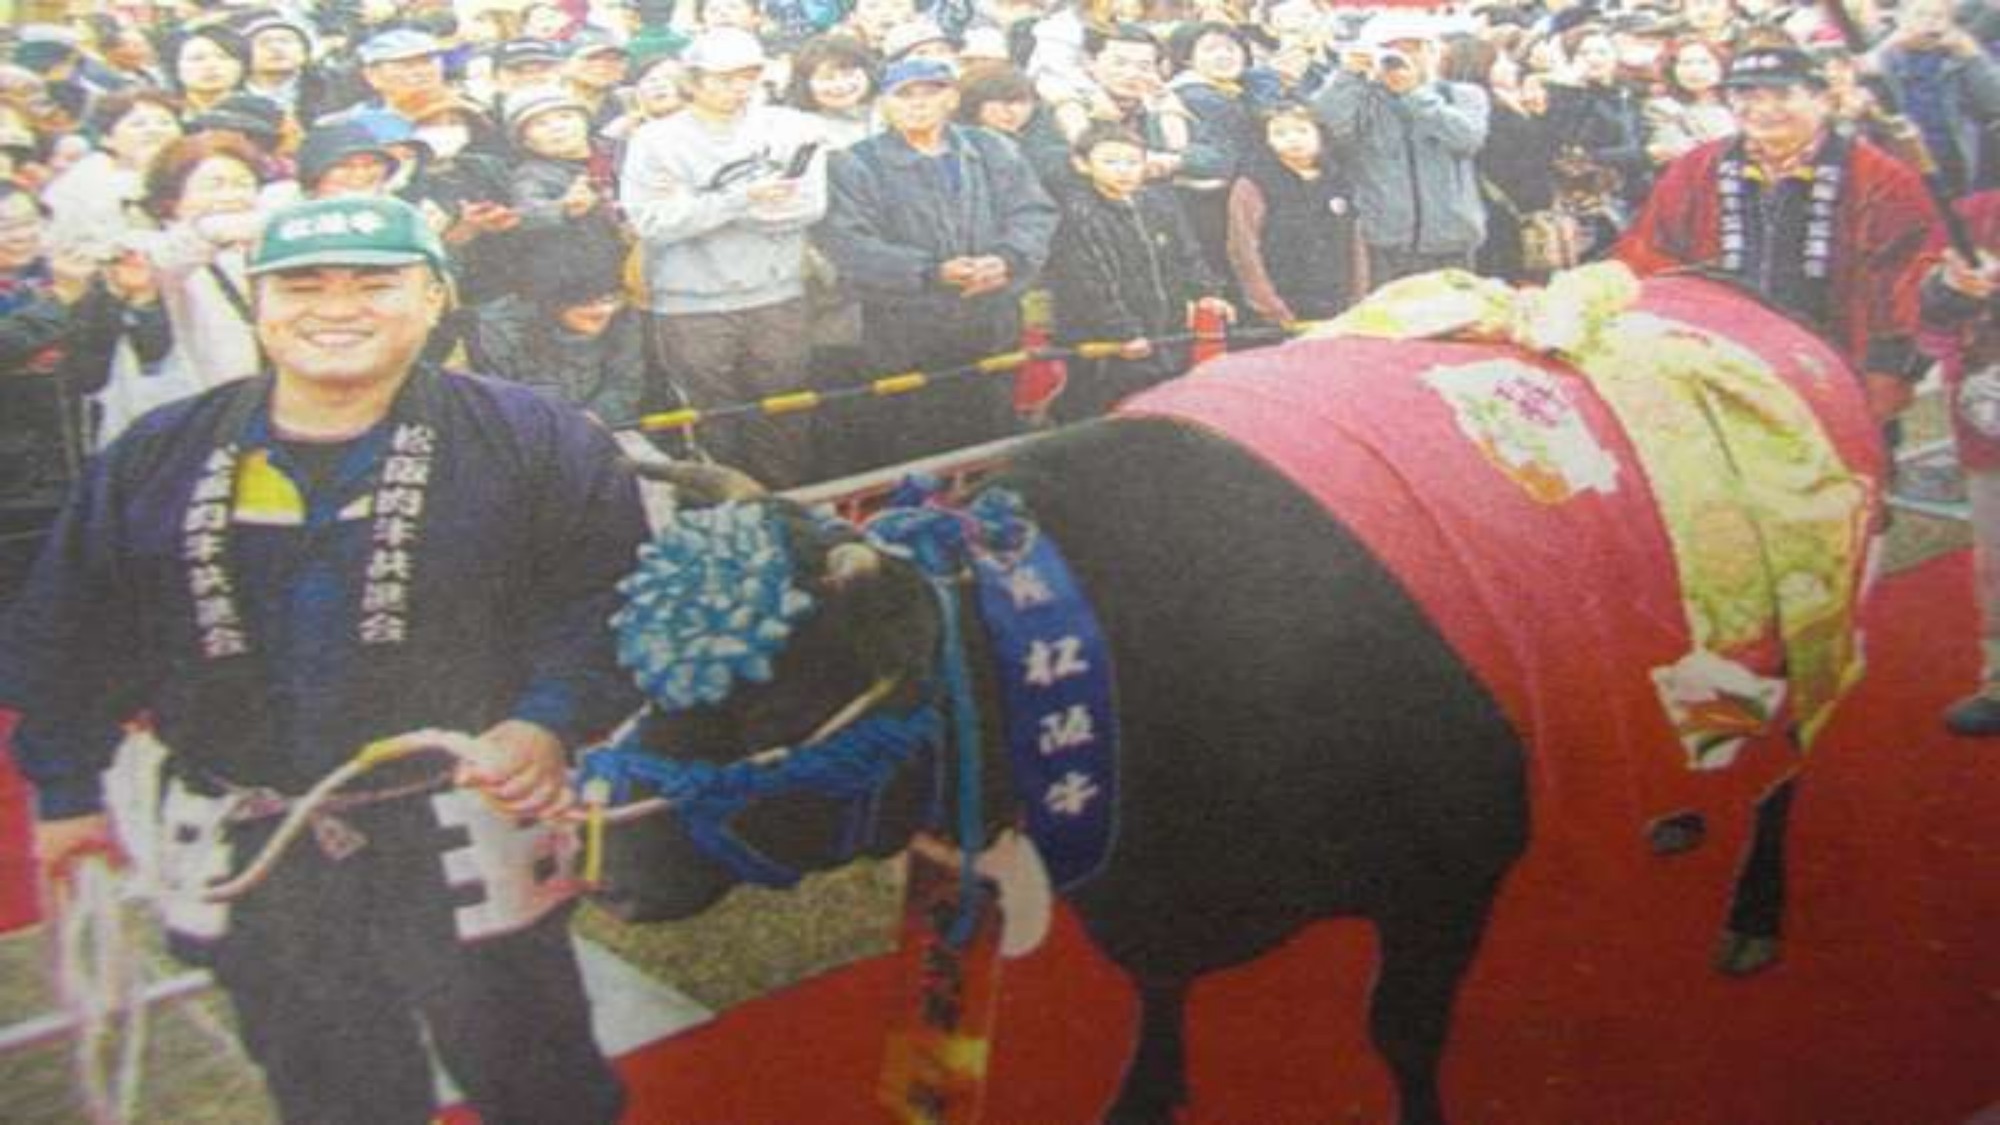 松阪牛の品評会の様子です。